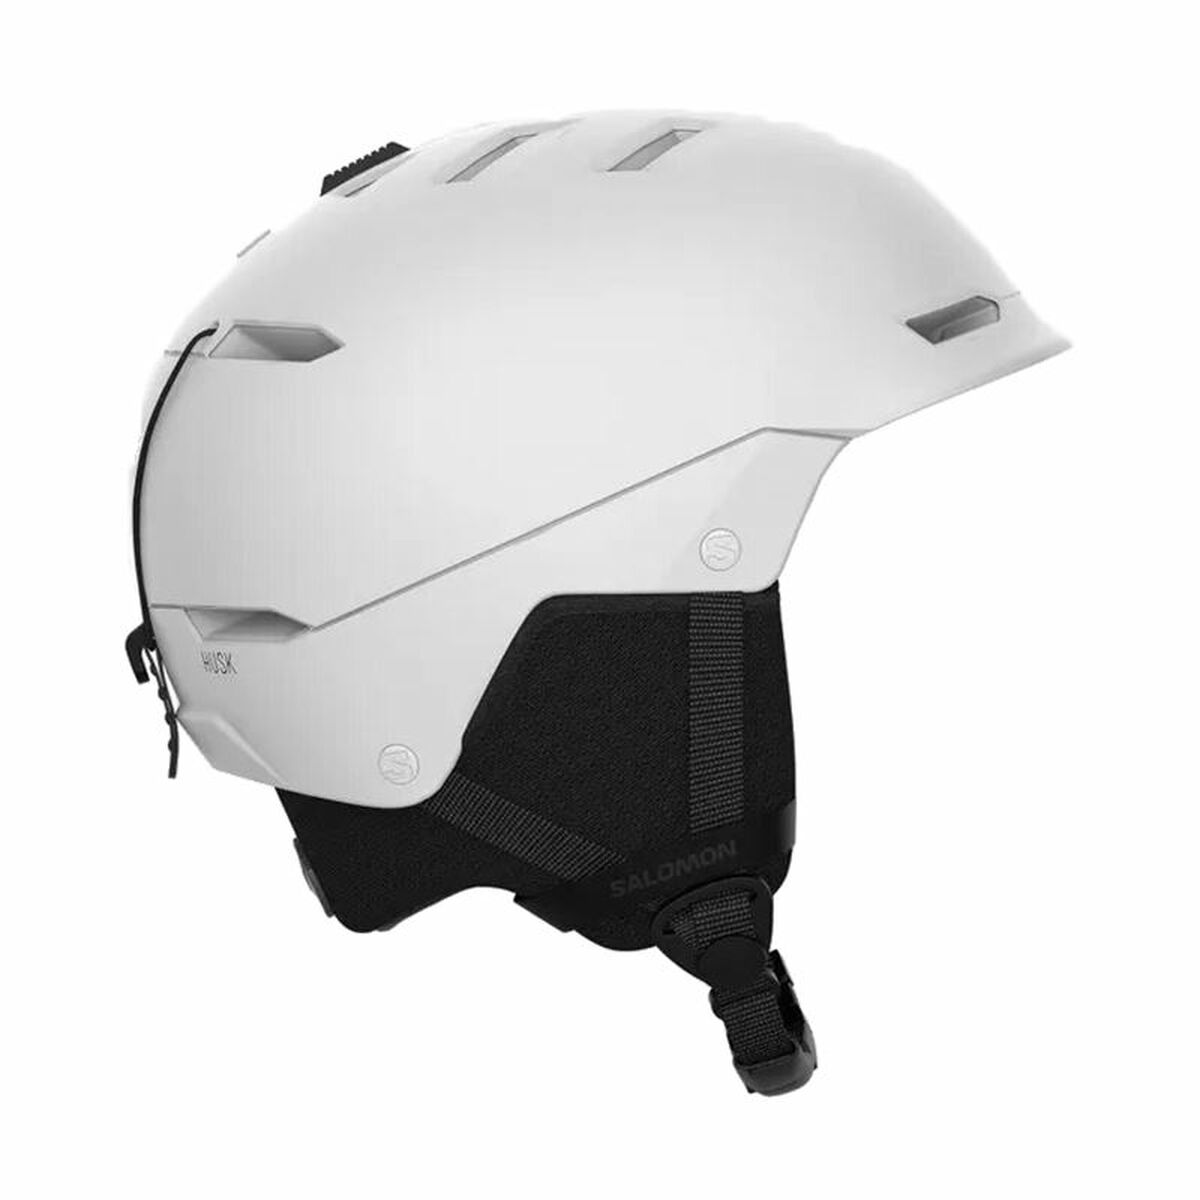 Ski Helmet  Snowboarding Salomon  Husk  White Black Unisex S 56-60 cm 56-58